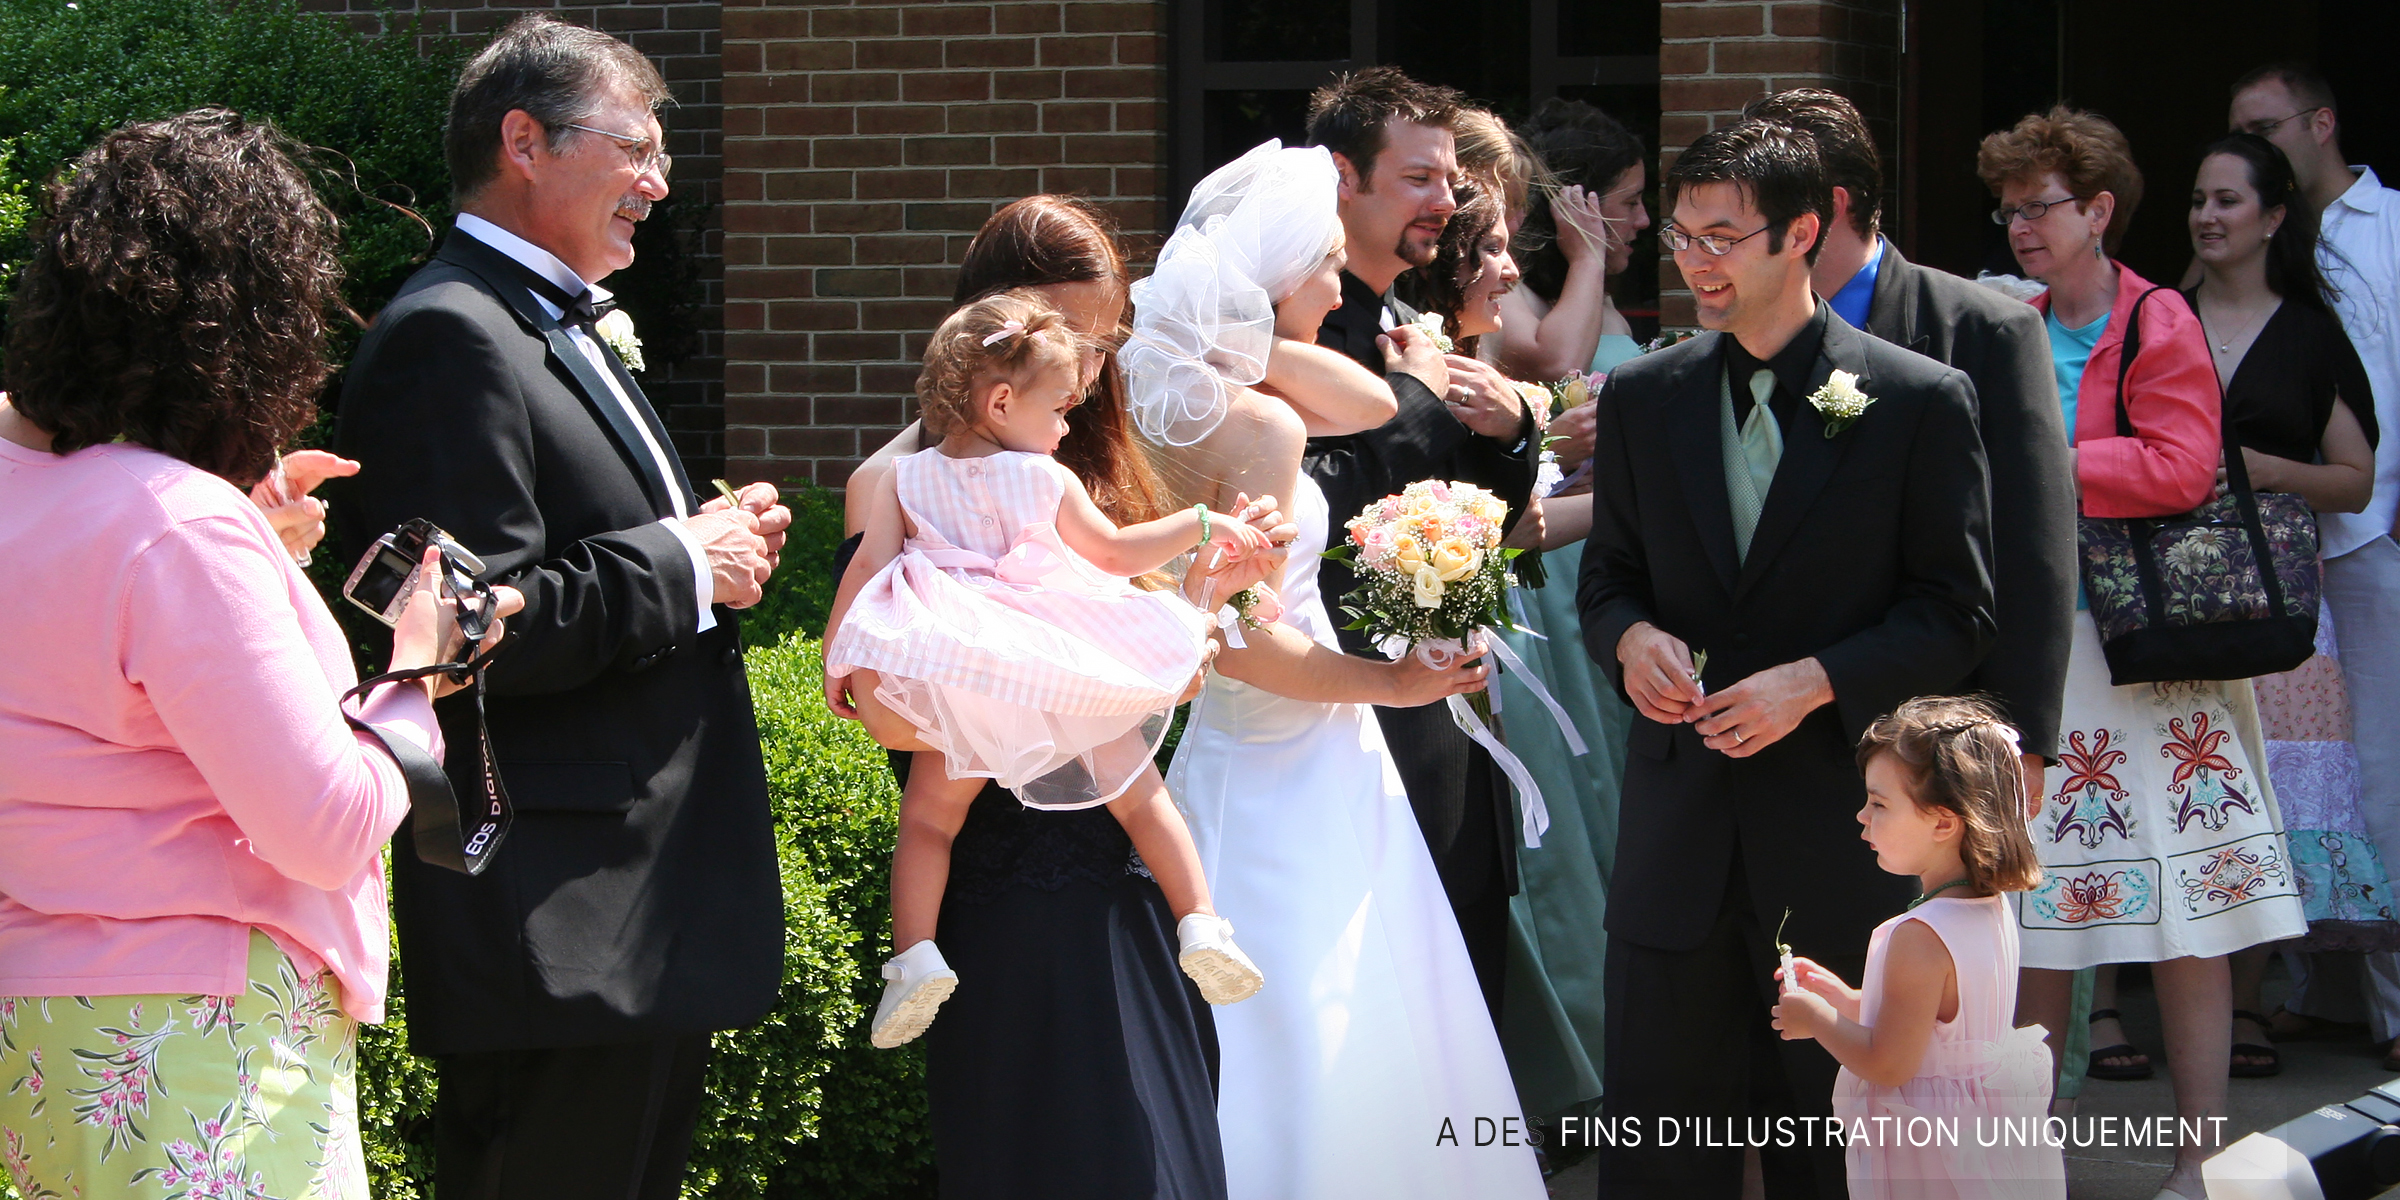 Un groupe de gens se tenant à l'extérieur lors d'un mariage | Source : Flickr / Gavin St. Ours (CC BY 2.0)